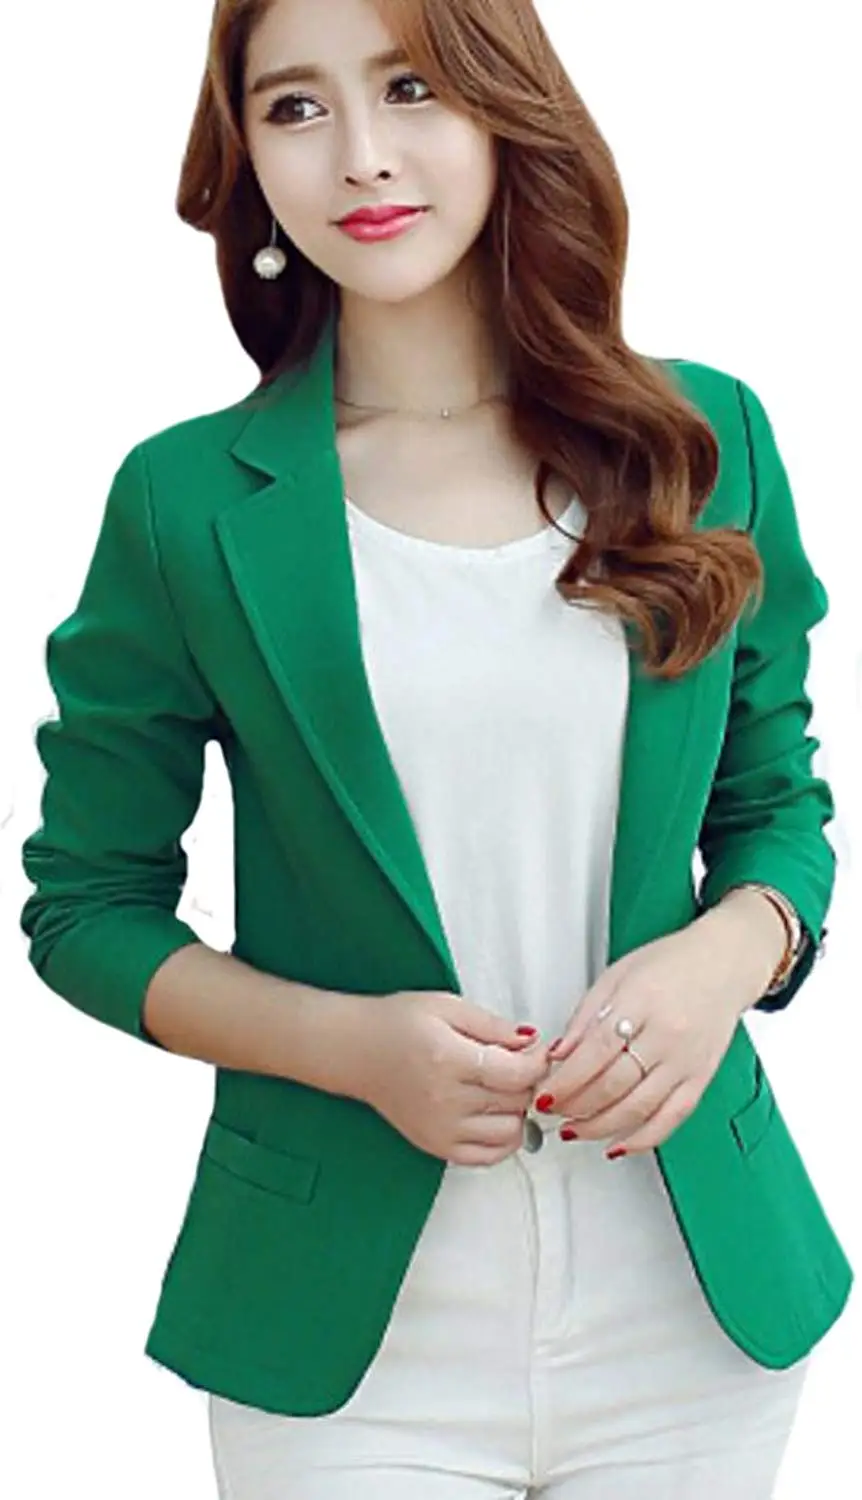 Пиджак под зеленое платье